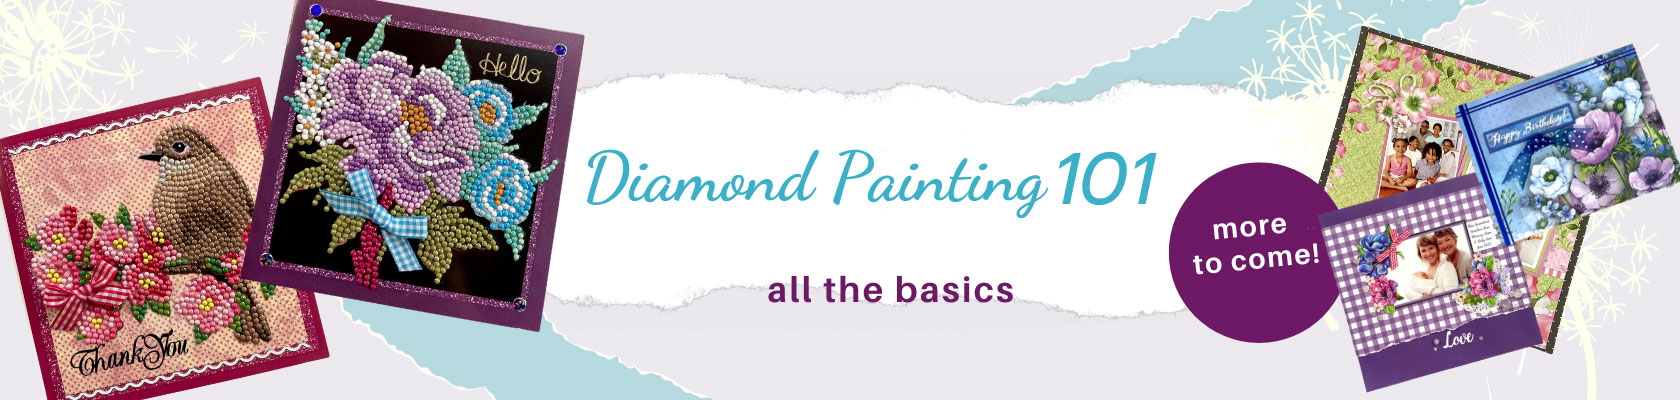 Diamond Painting 101